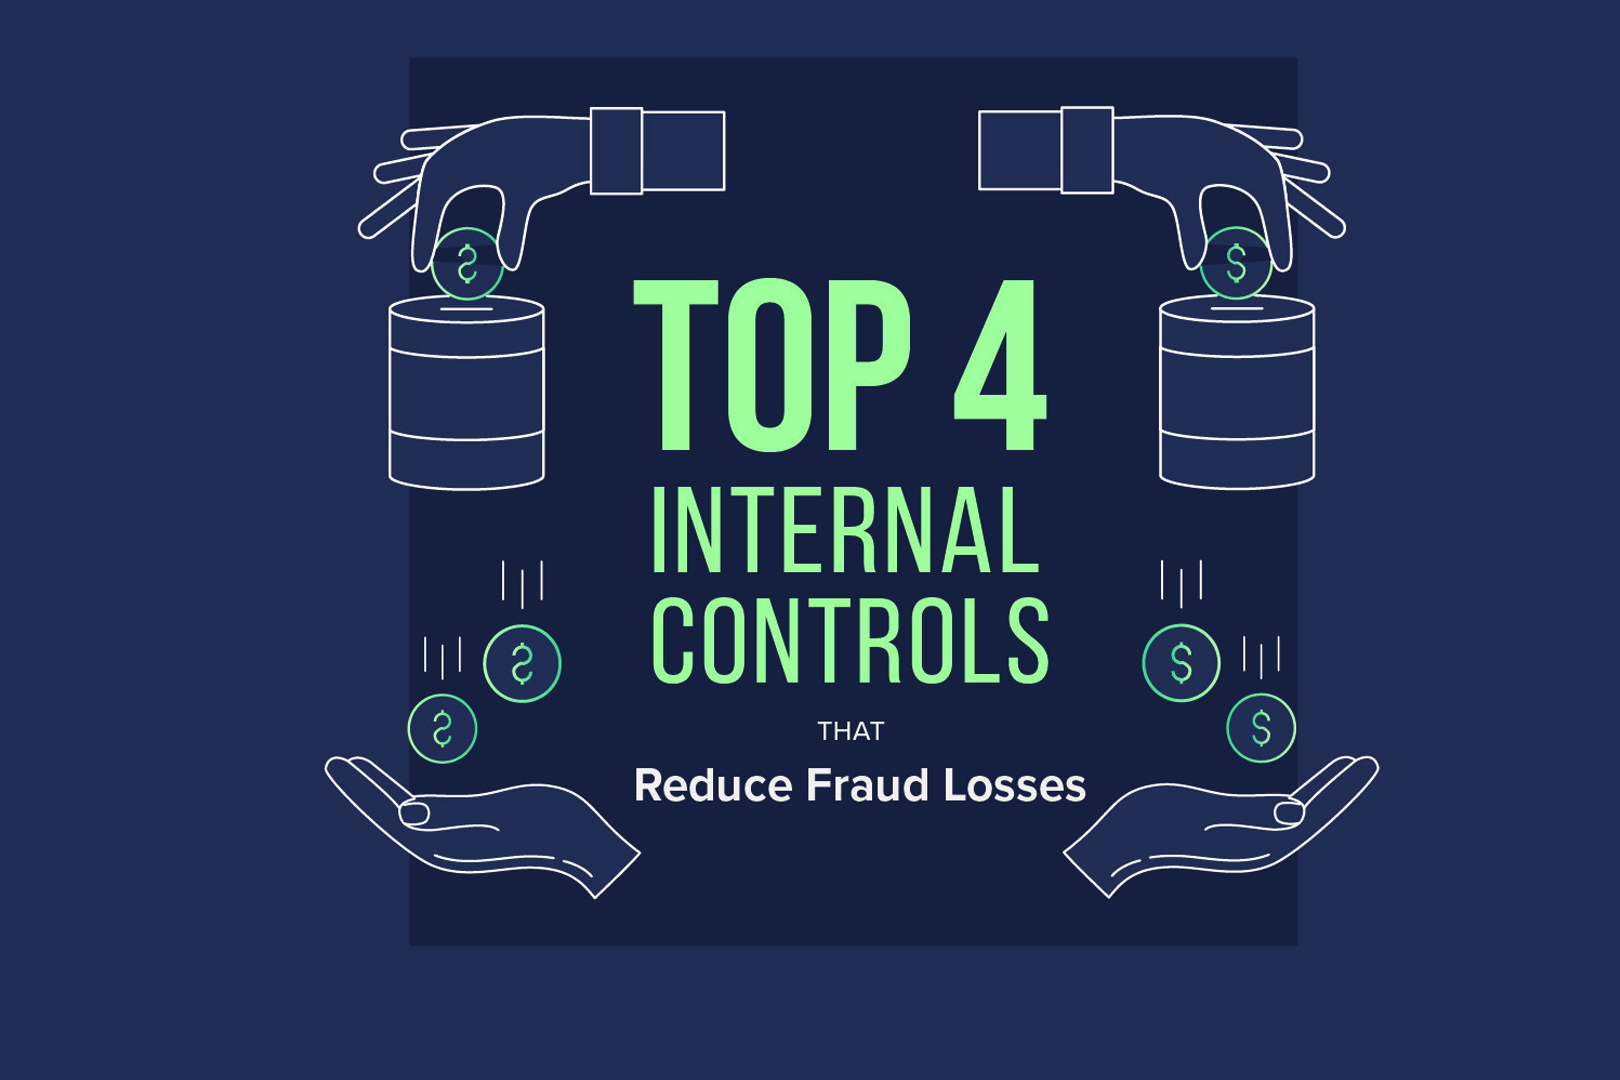 Top 4 Internal Controls